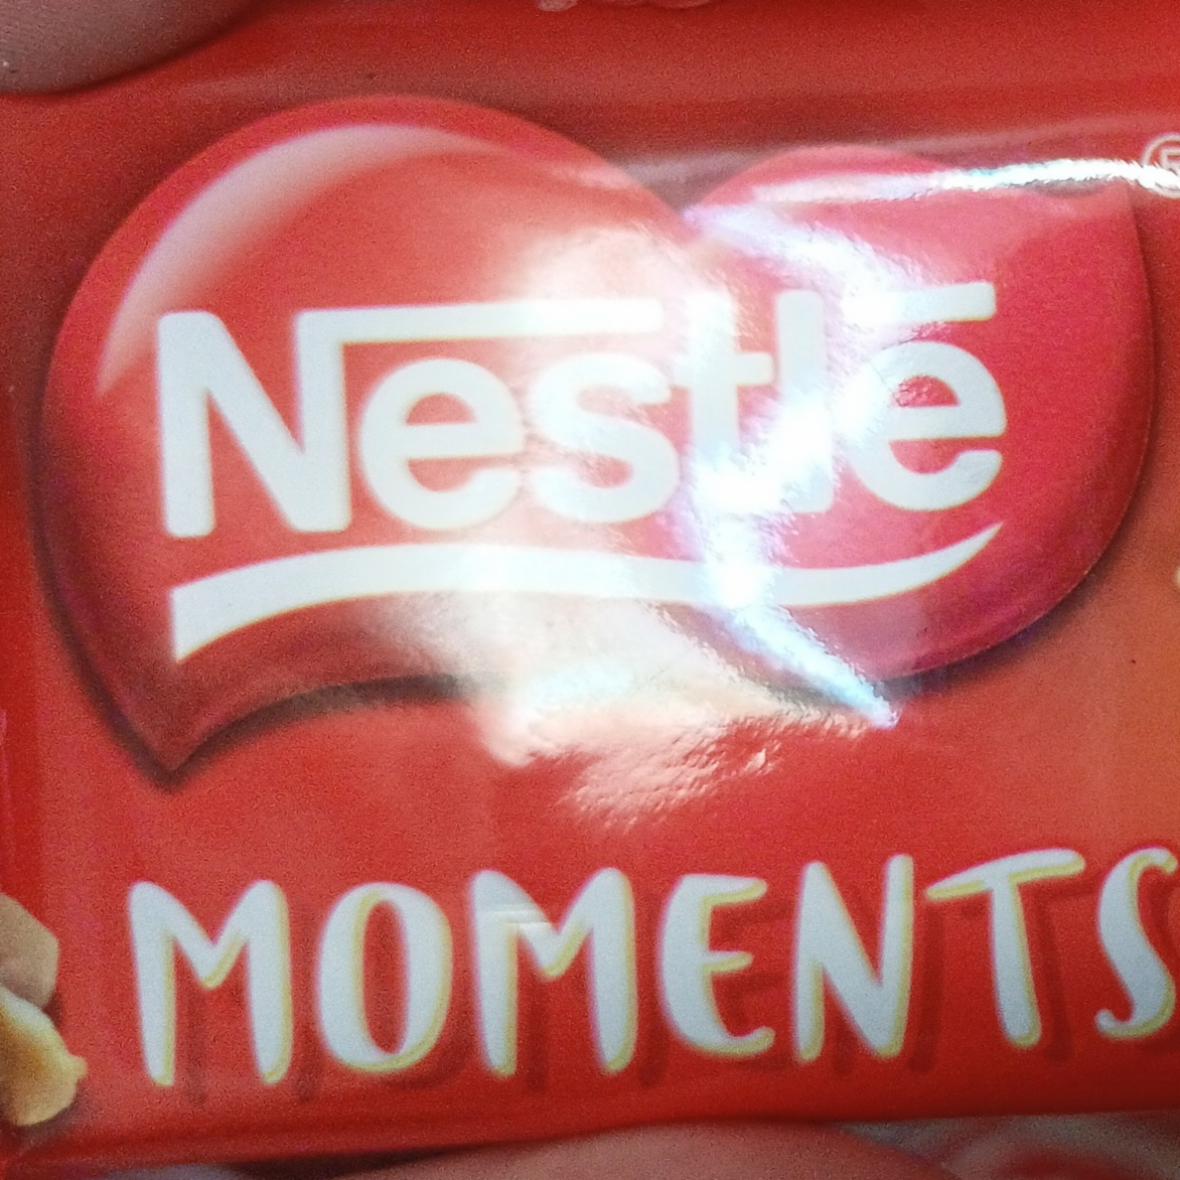 Fotografie - Moments chocolate de leite e amendoim Nestlé